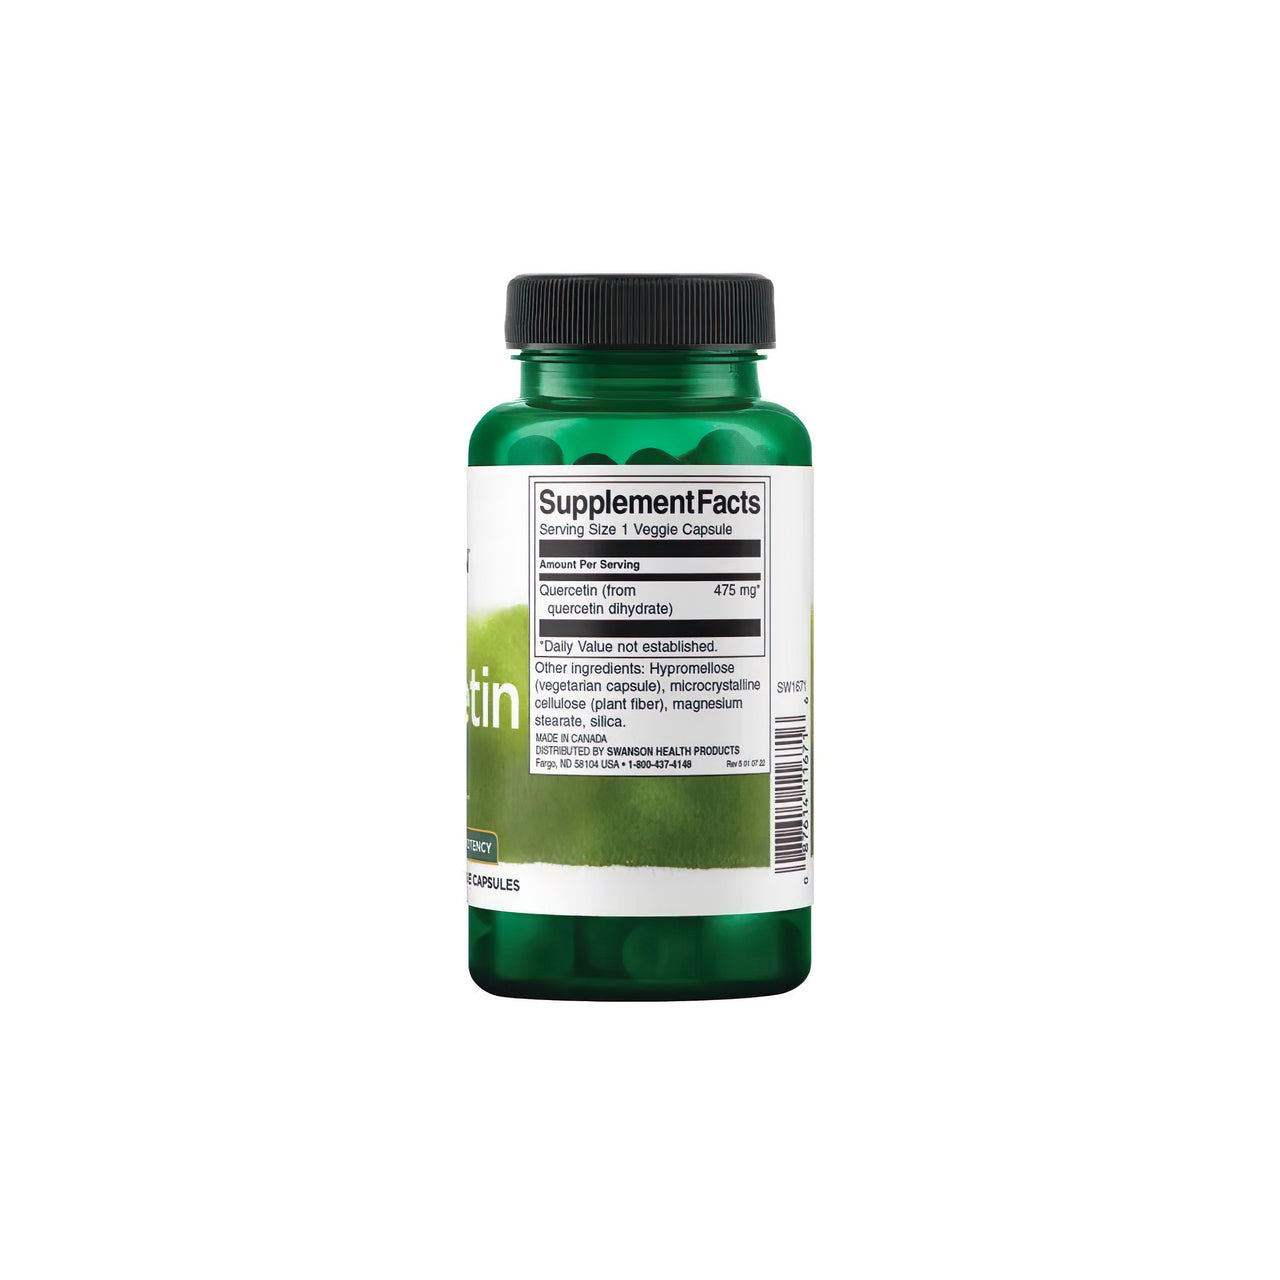 Um frasco de Quercetin 475 mg 60 vcaps, rico em antioxidantes, da Swanson sobre um fundo branco, que promove os benefícios para o sistema imunitário e os vasos sanguíneos.